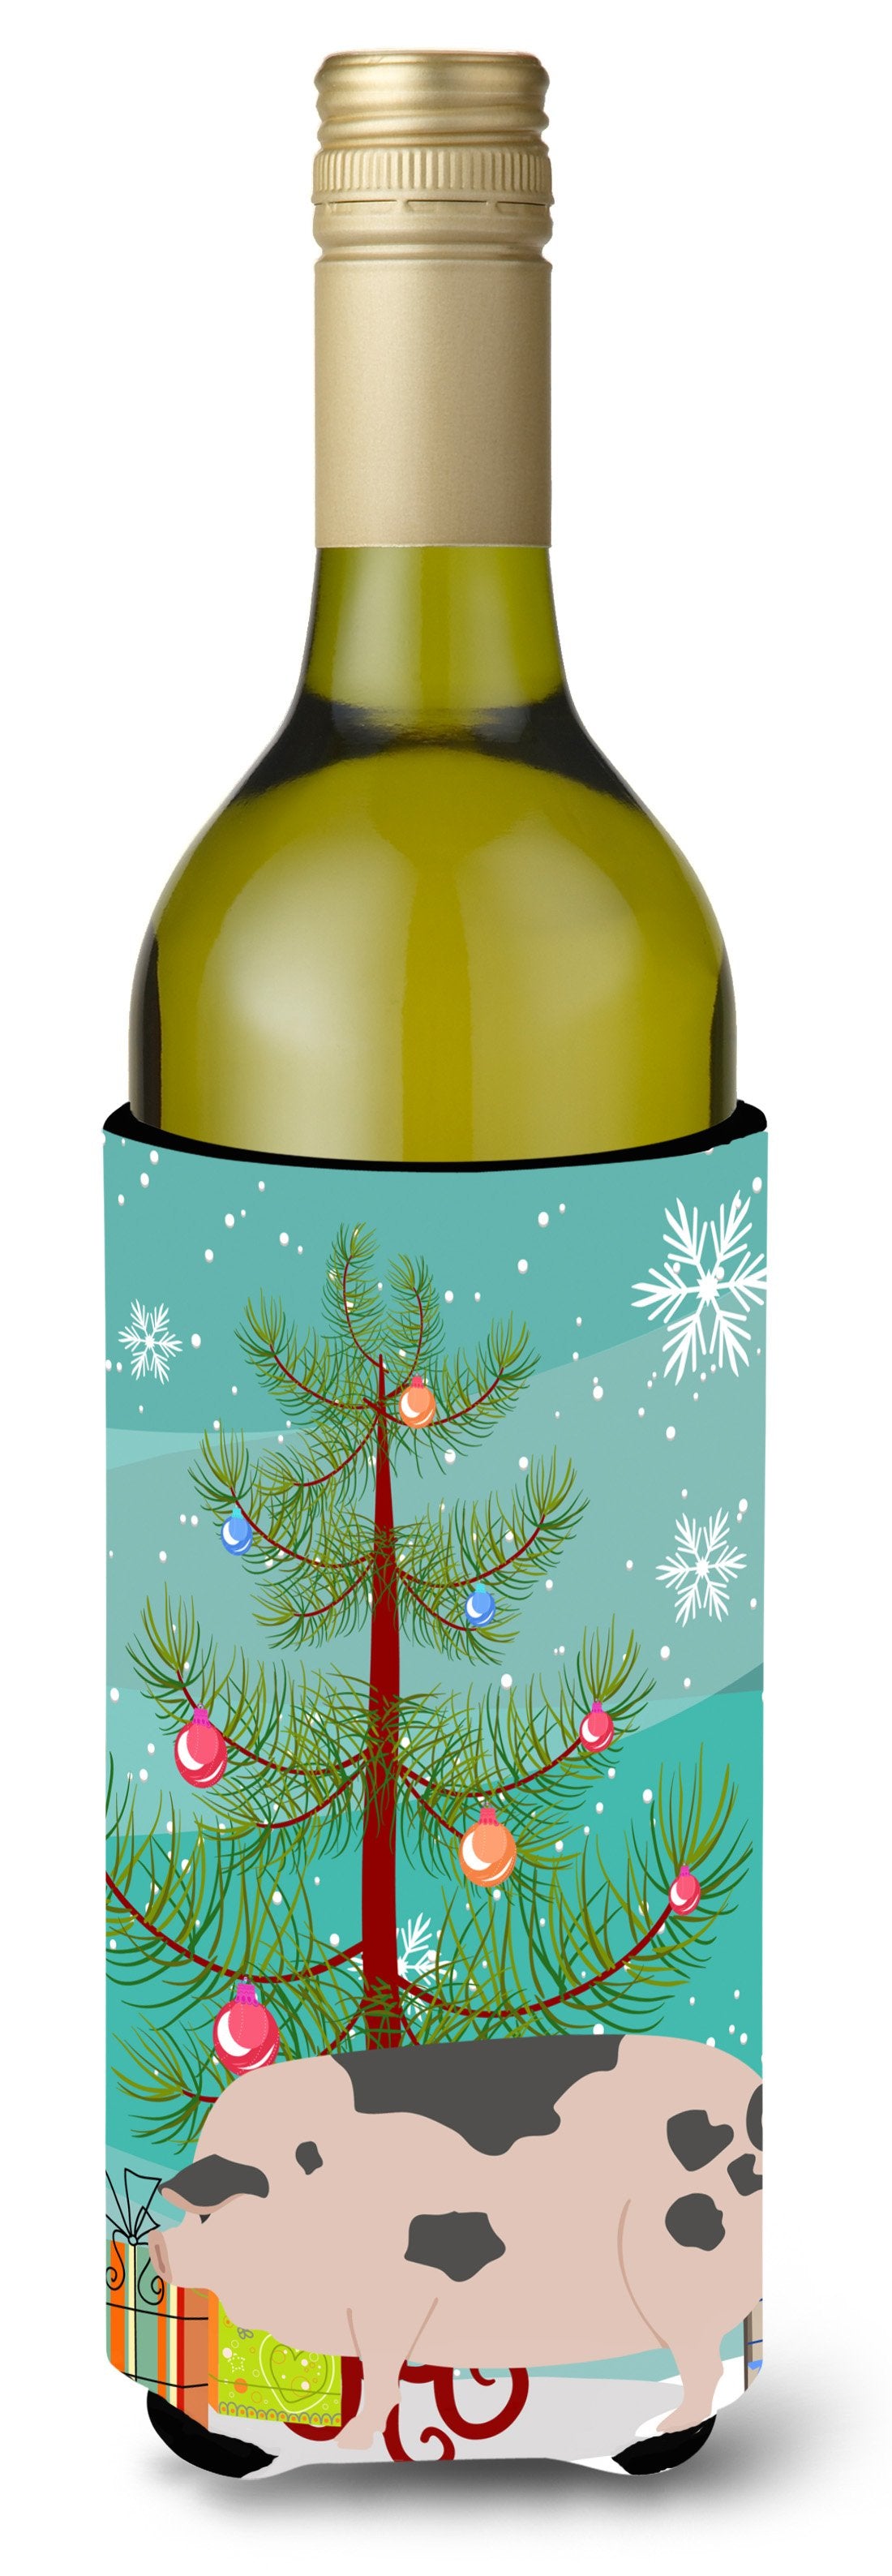 Gloucester Old Spot Pig Christmas Wine Bottle Beverge Insulator Hugger BB9307LITERK by Caroline&#39;s Treasures